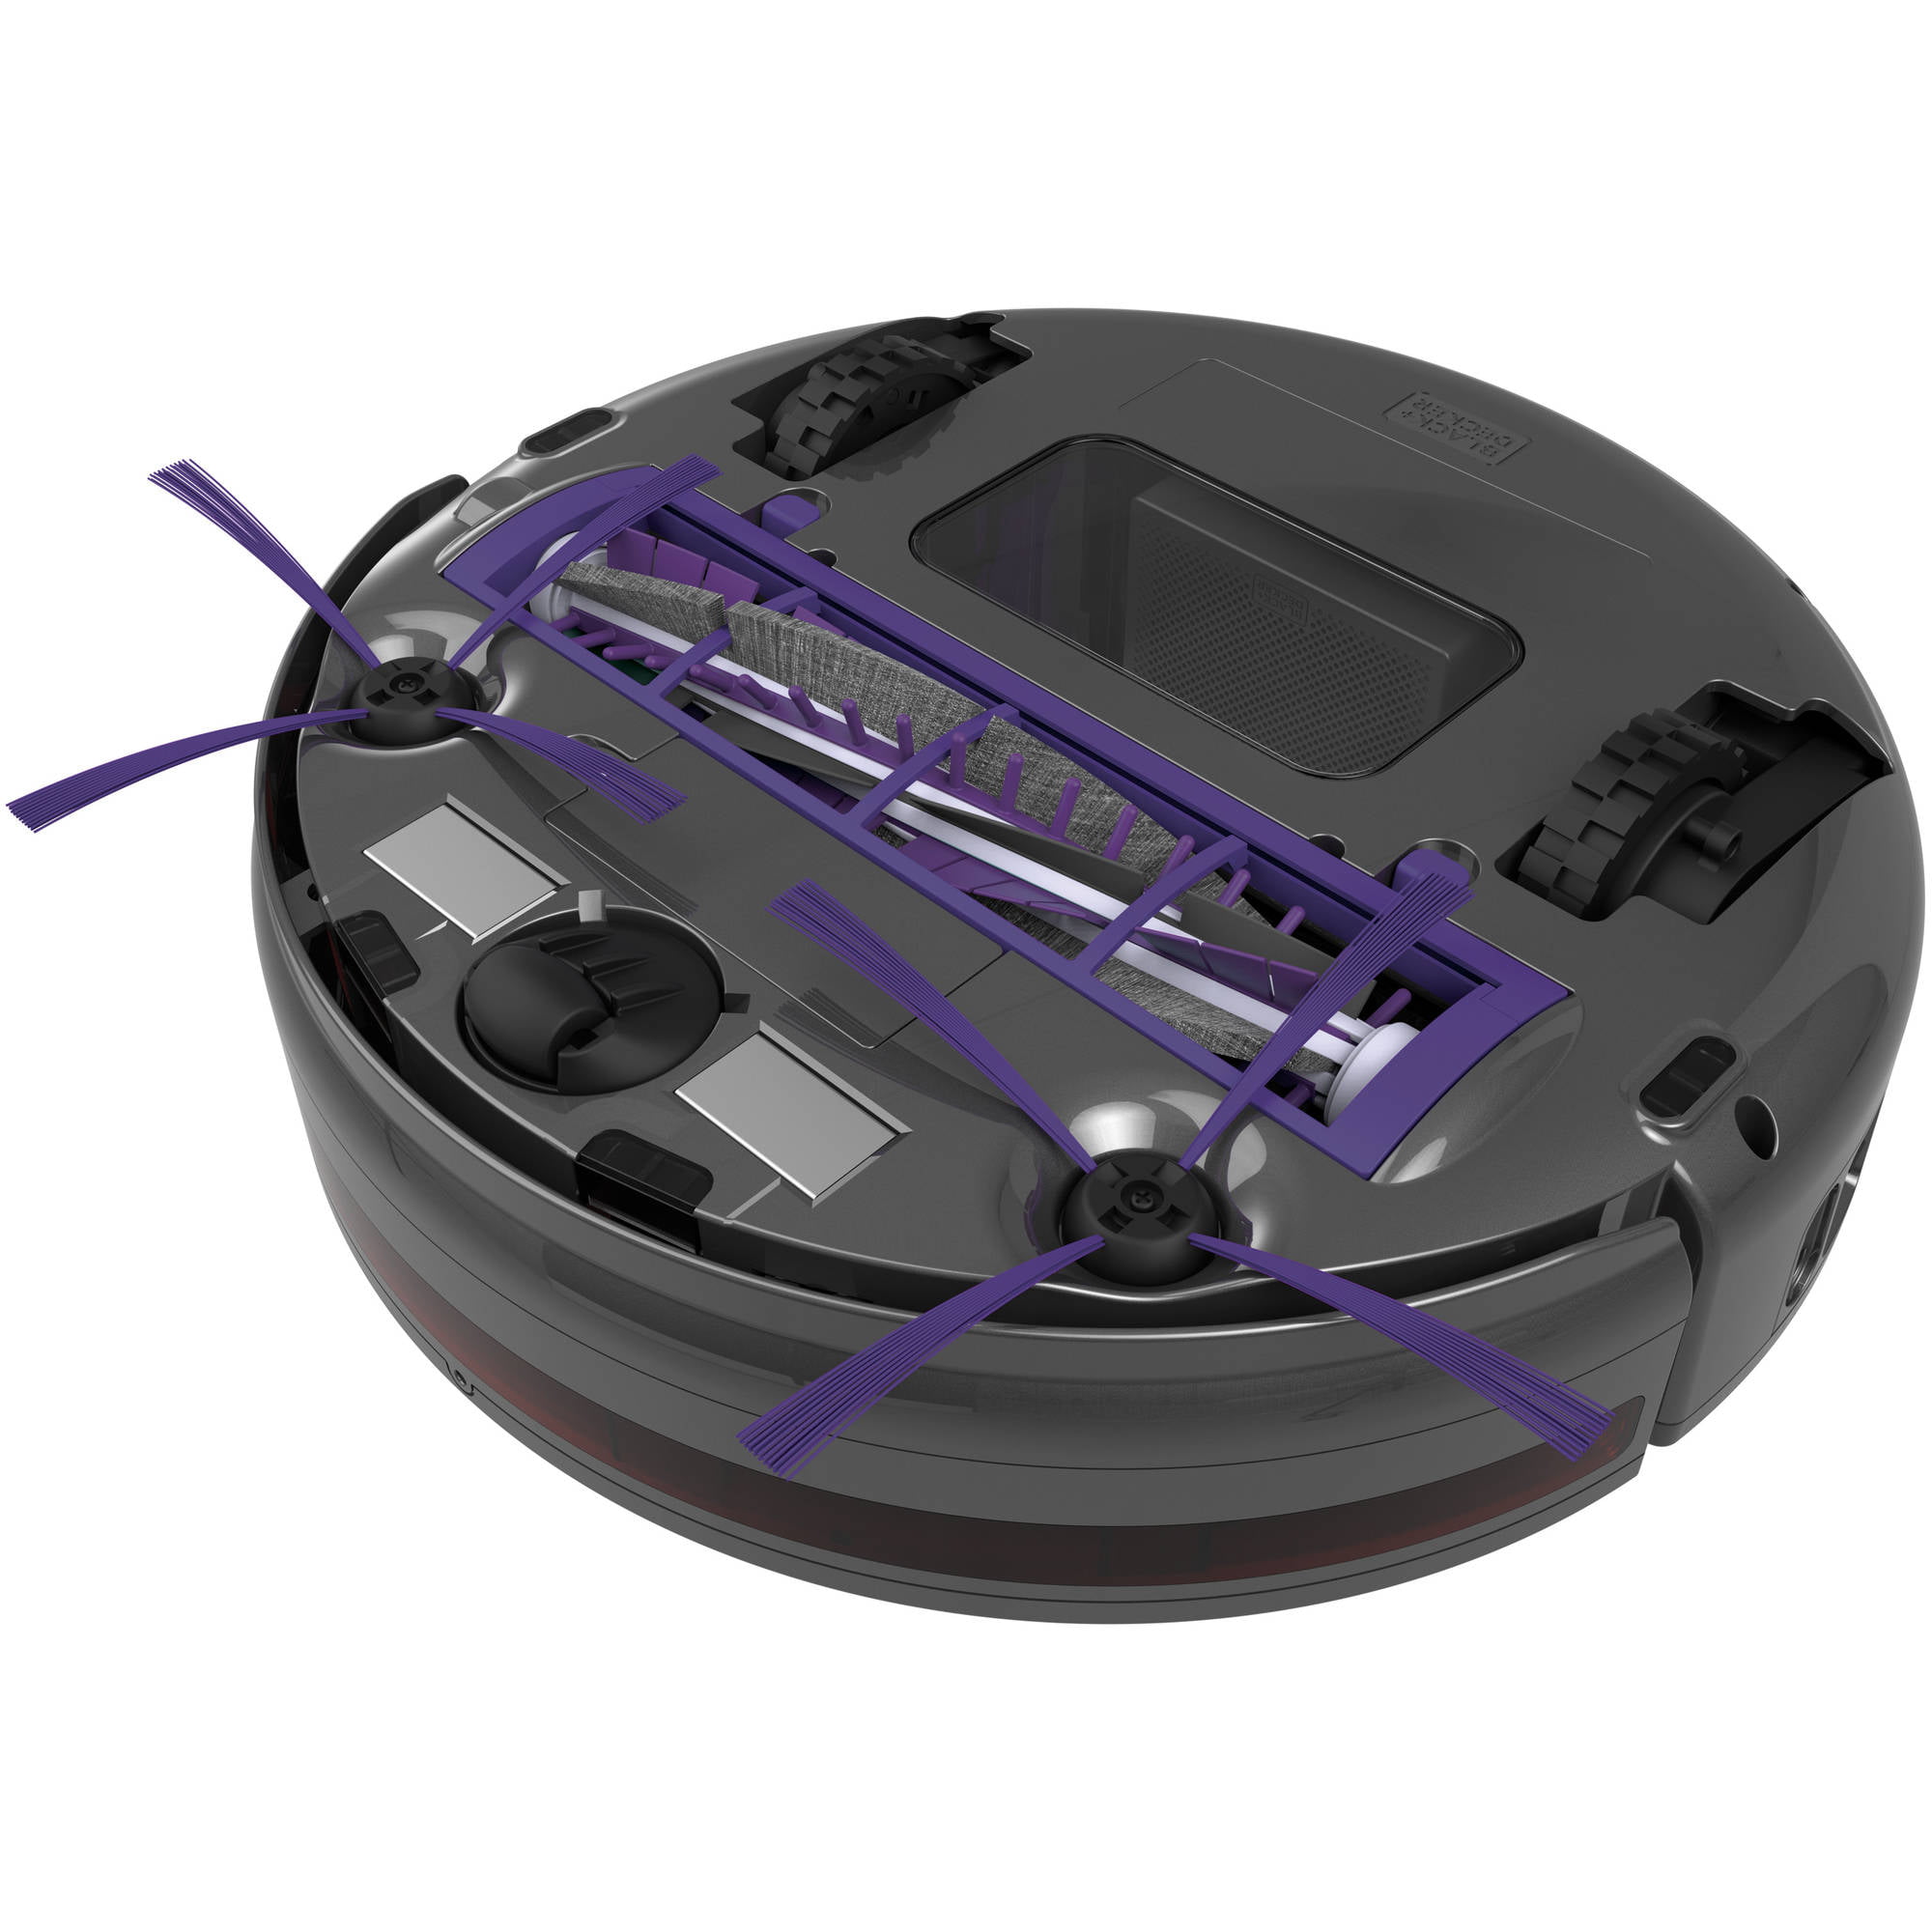 BLACK+DECKER™ Announces SMARTECH™ Robotic Vacuums